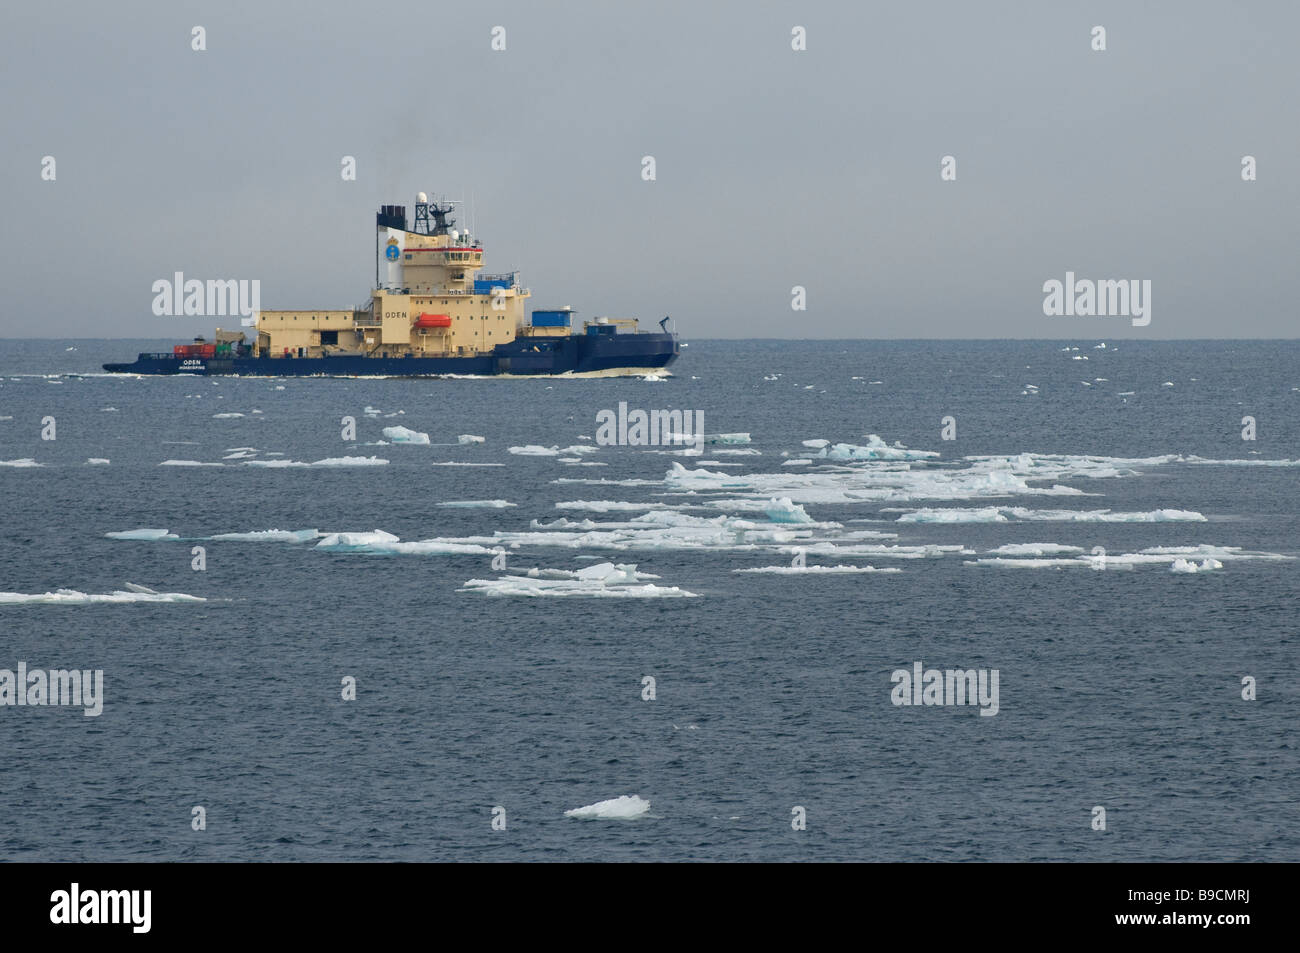 Brise-glace suédois Oden entre la glace de mer à l'ouest du Spitzberg, Svalbard. Banque D'Images